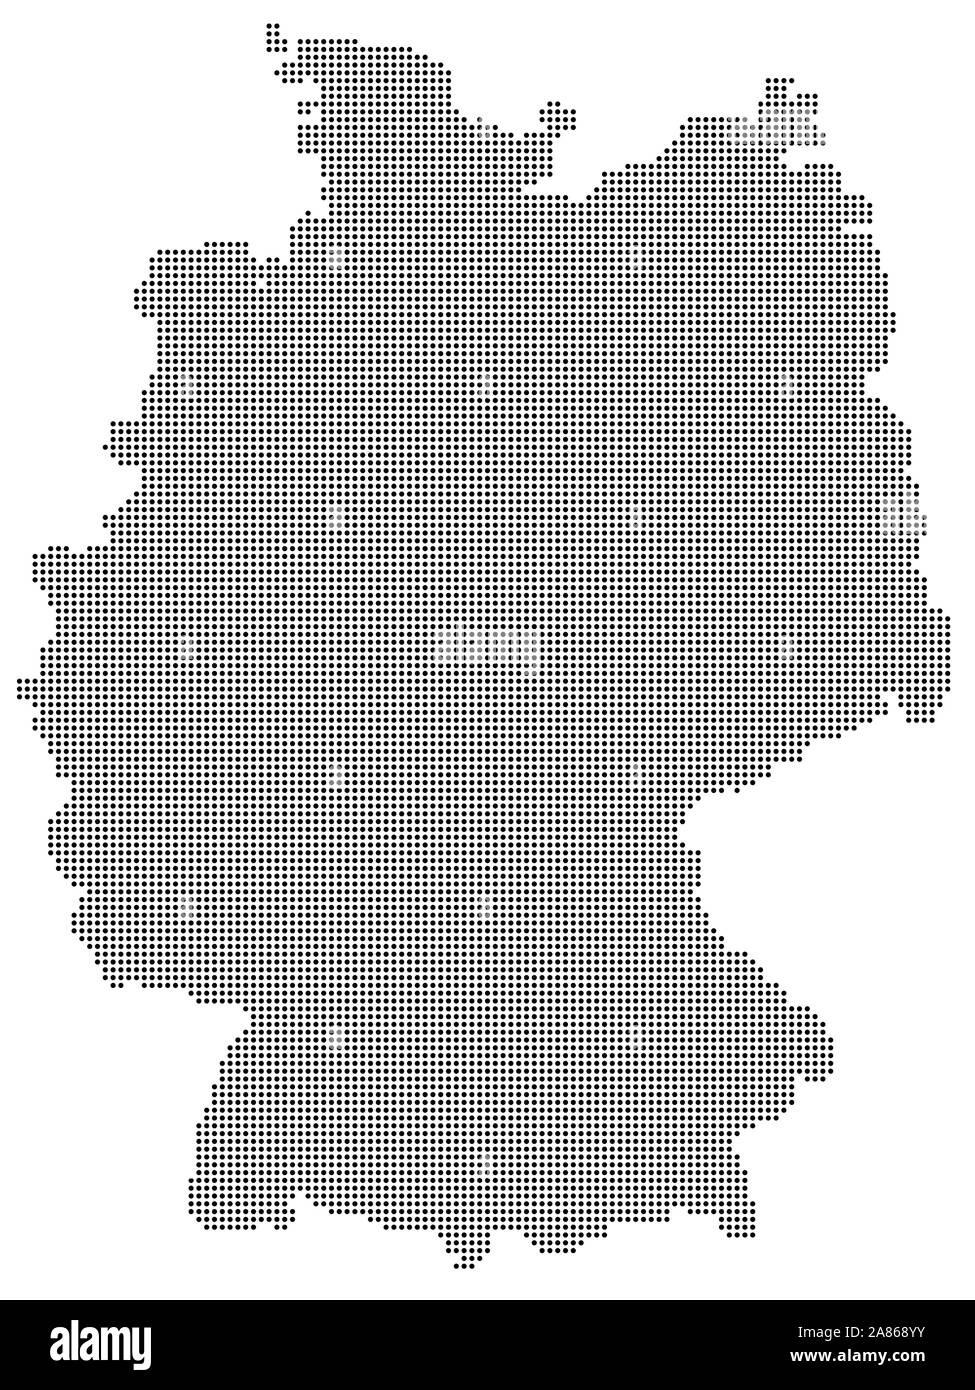 Alemania mapa de semitono ilustración vectorial EPS 10. Ilustración del Vector